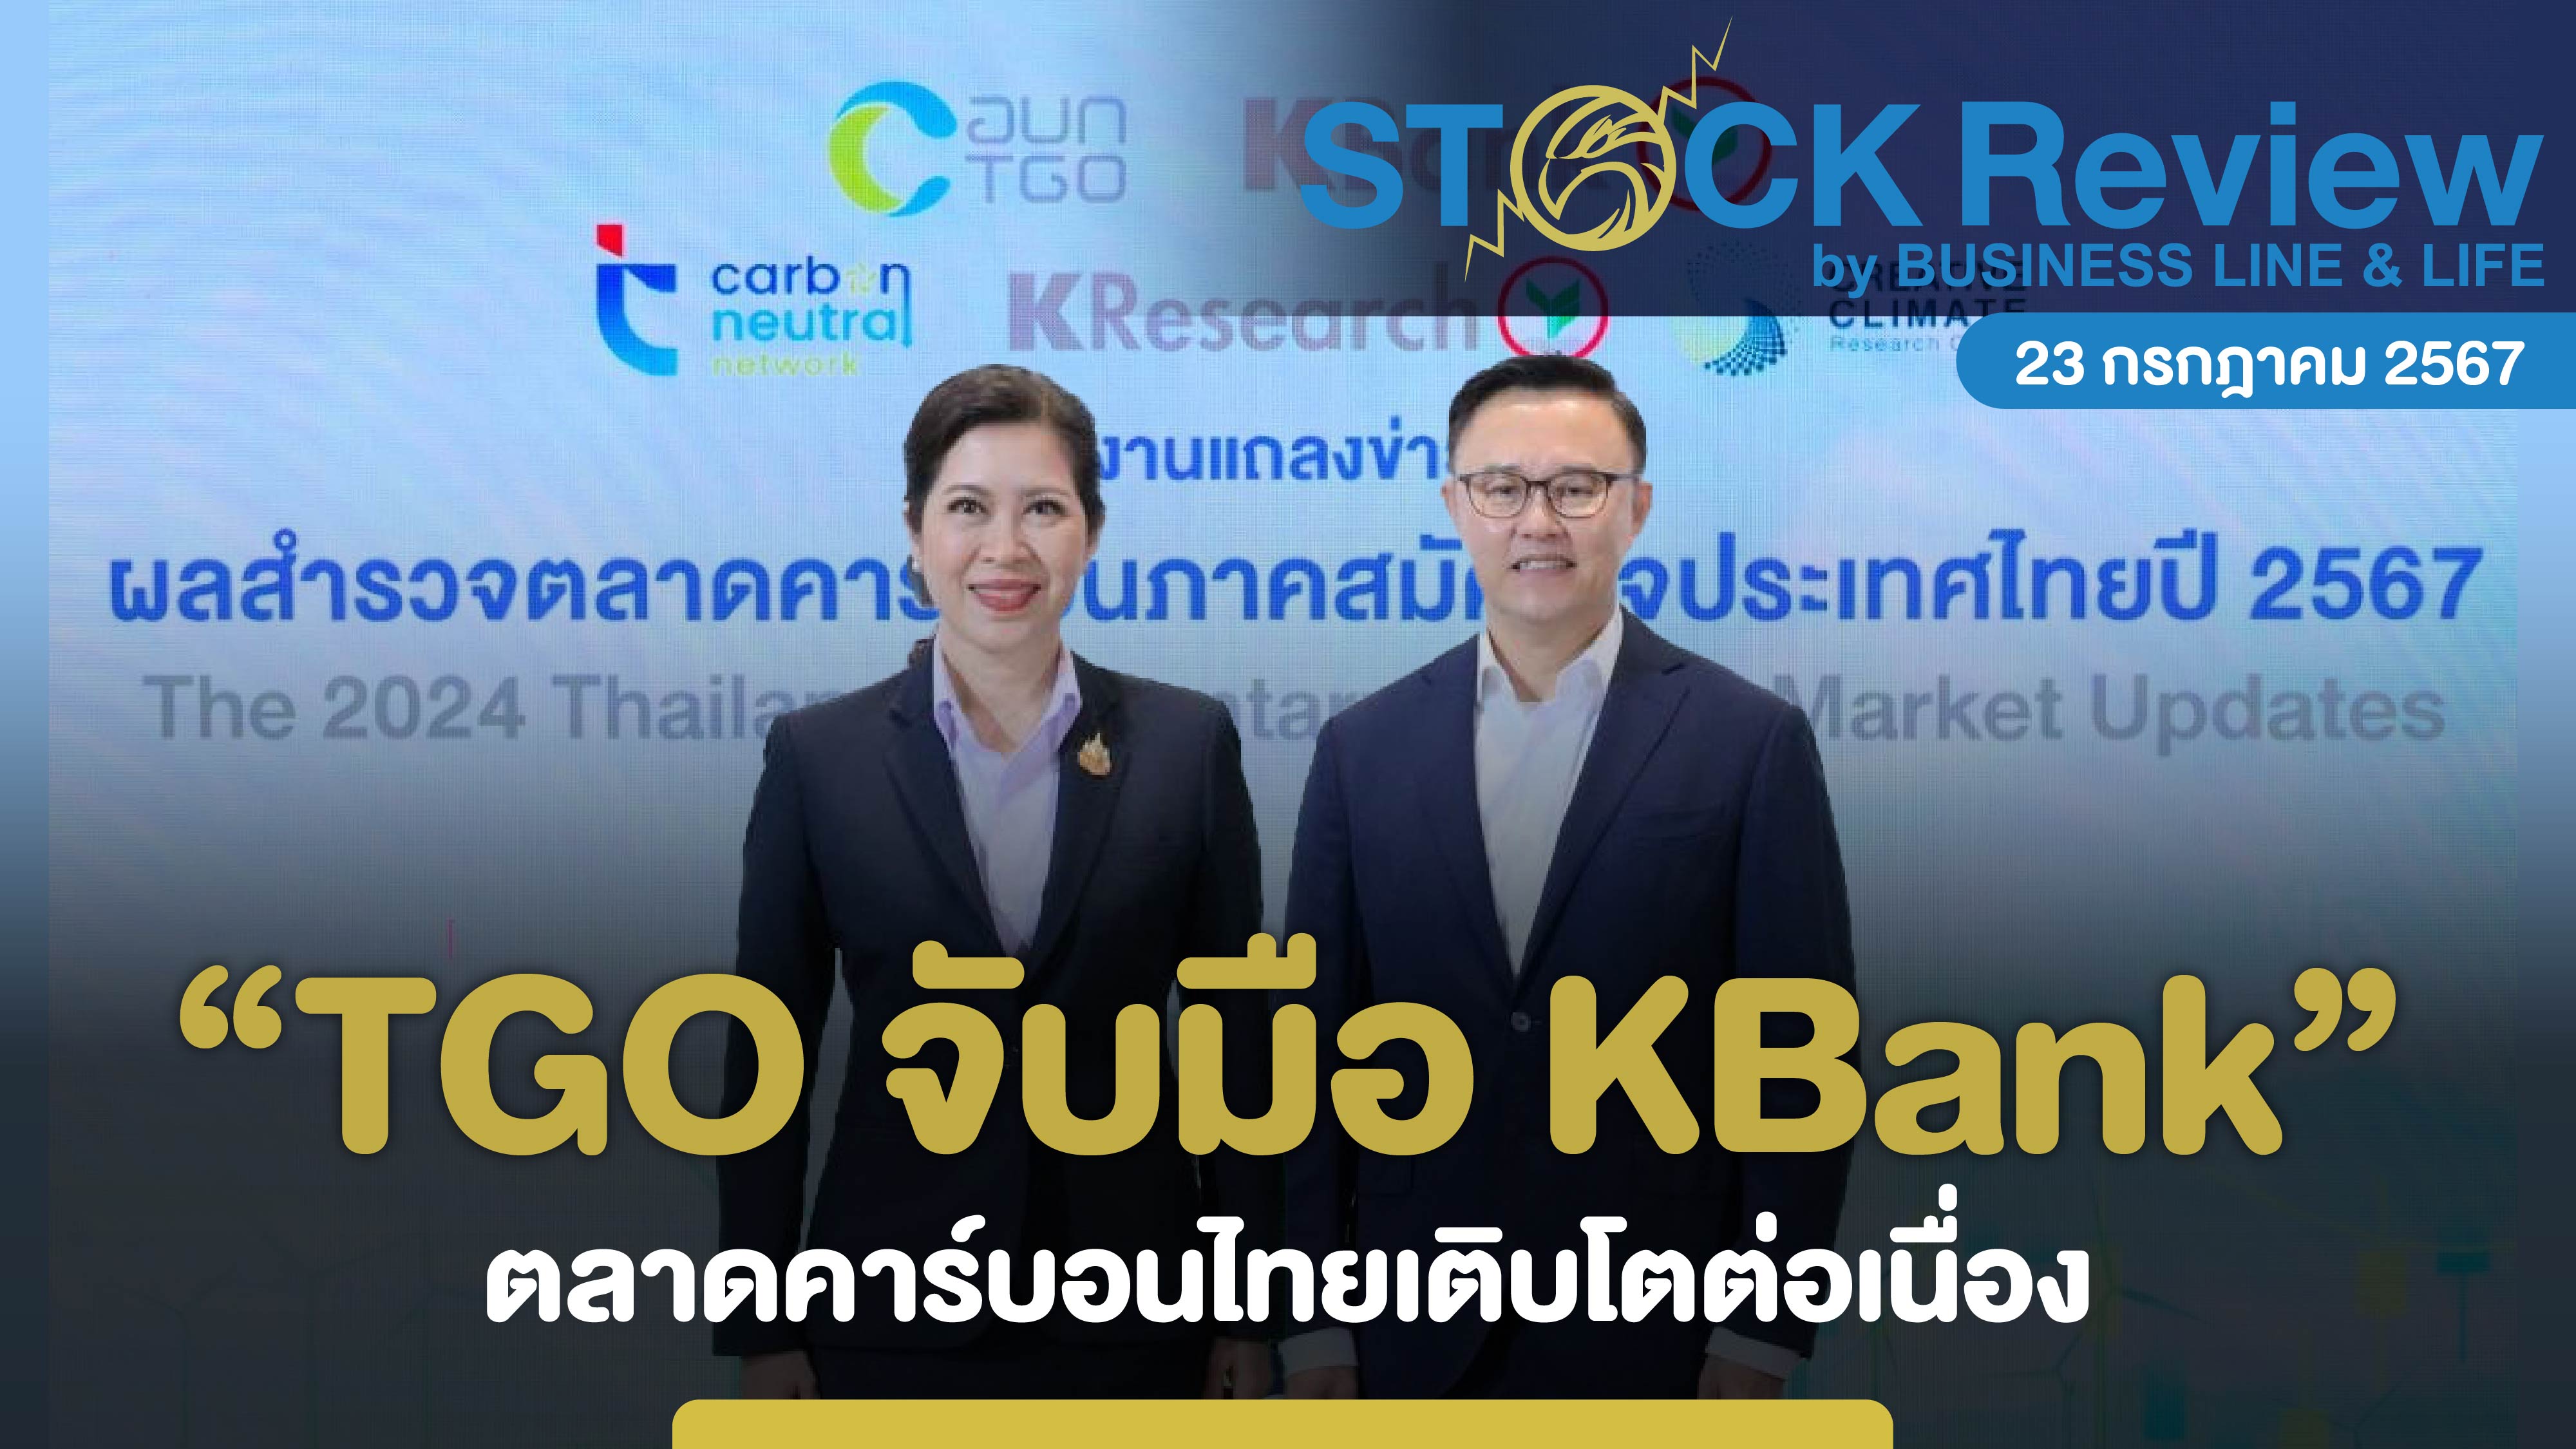 TGO จับมือ KBank ตลาดคาร์บอนไทยเติบโตต่อเนื่อง